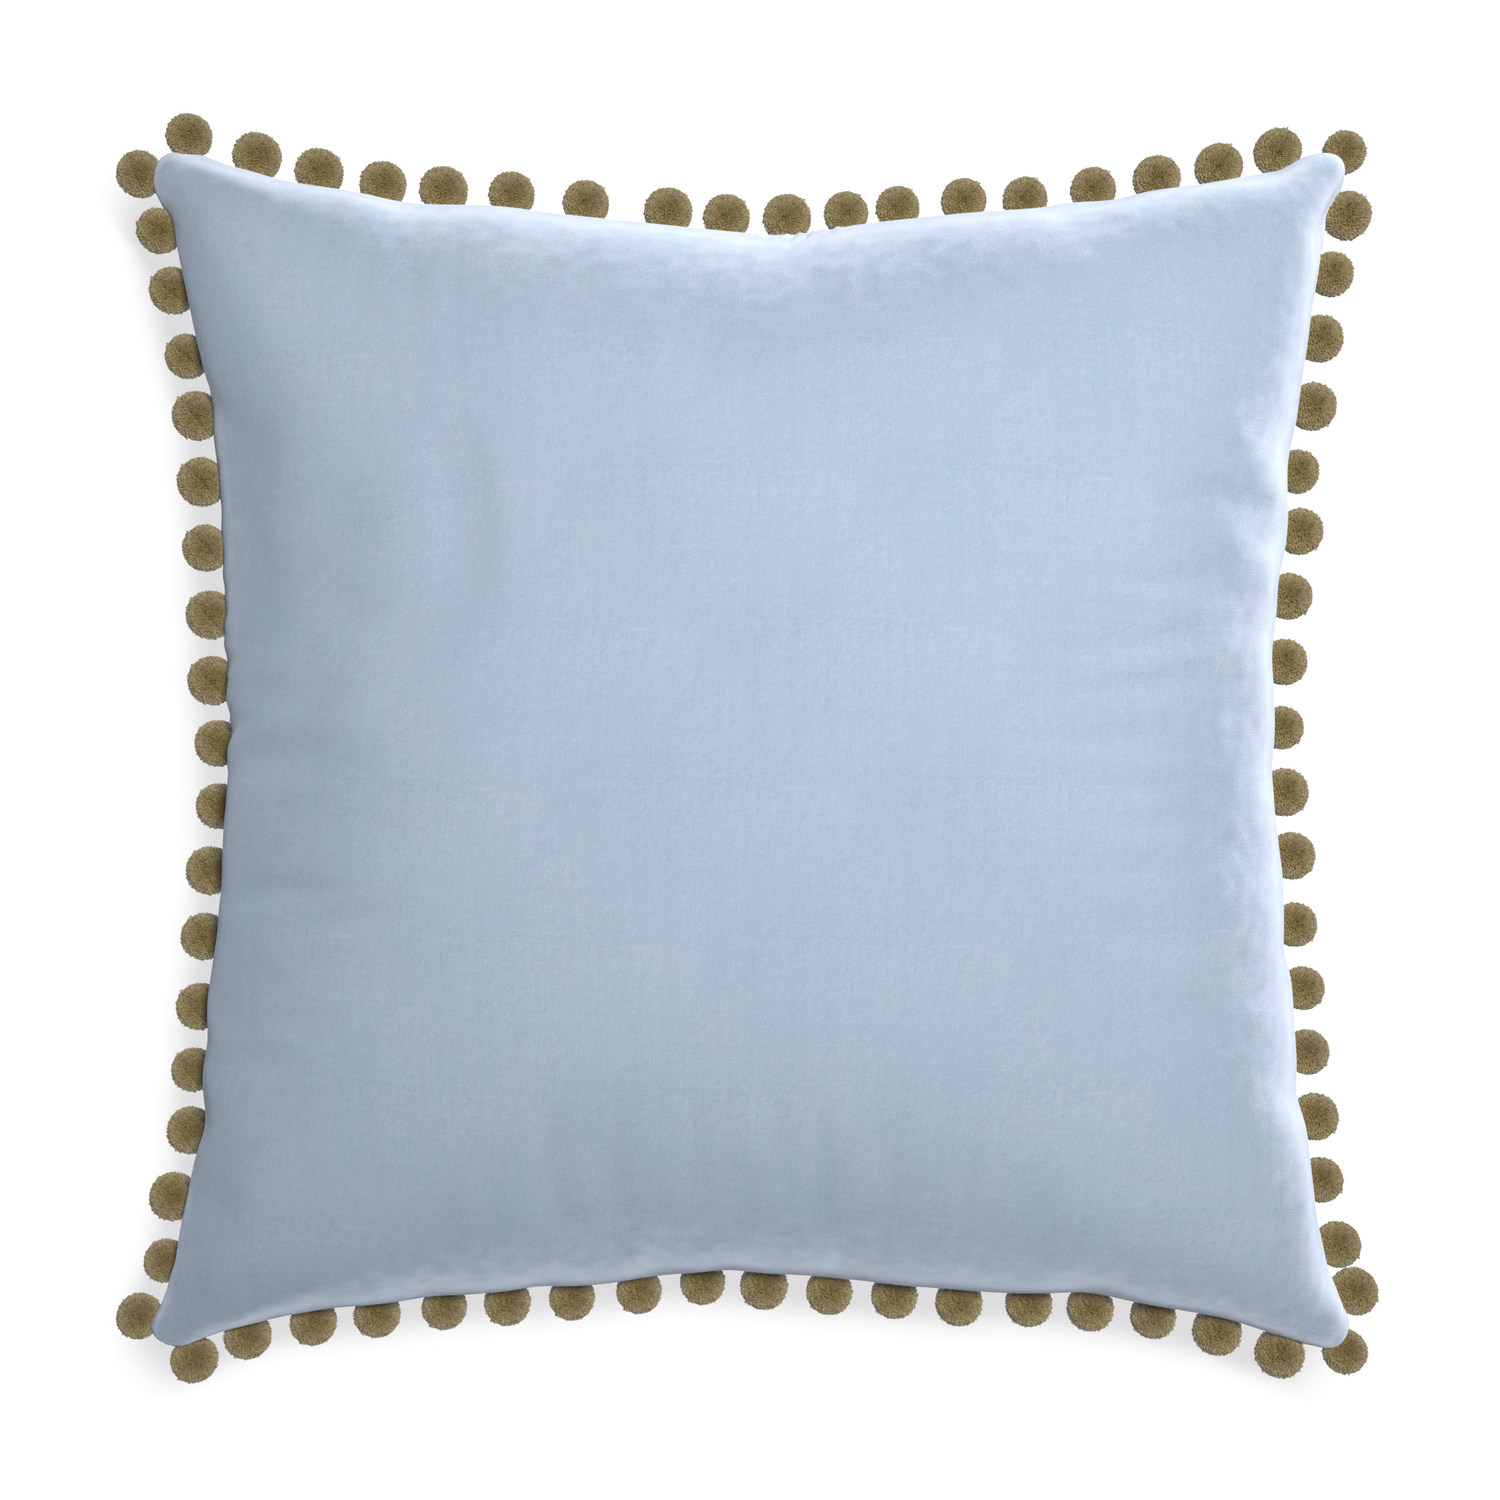 square light blue velvet pillow with olive green pom pom